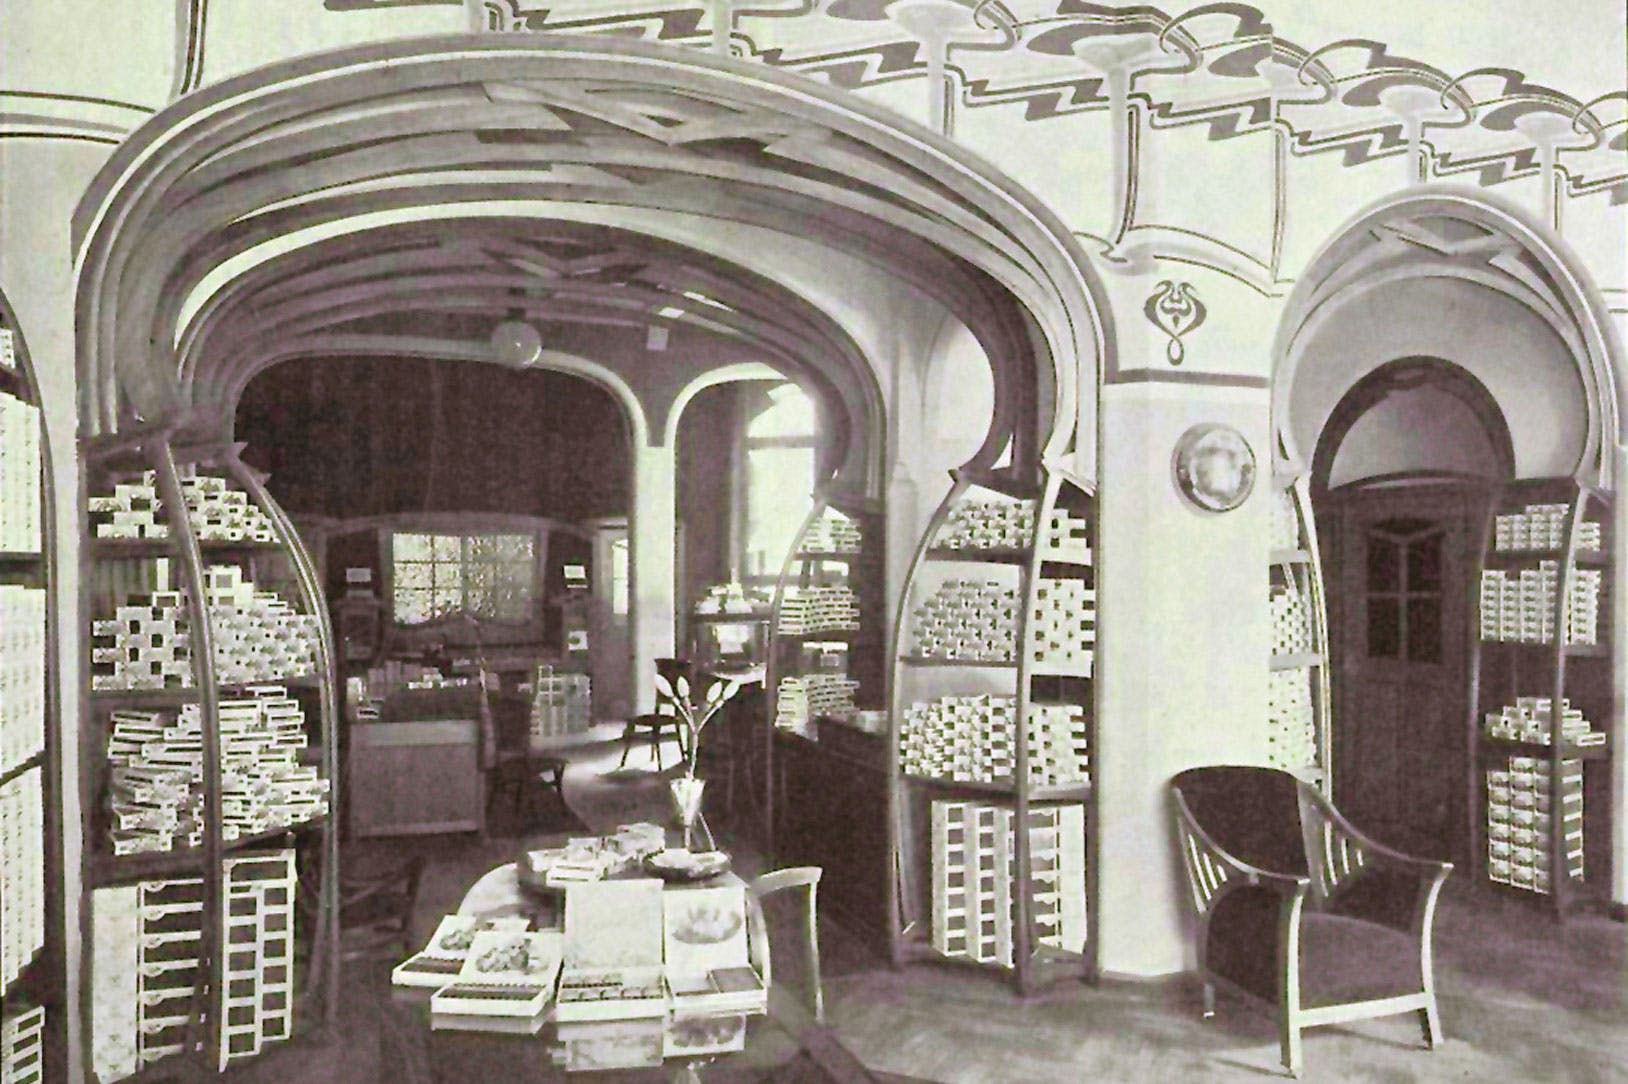 Henry van de Velde, Continental Havana Company interior, Berlin, 1899 (demolished)